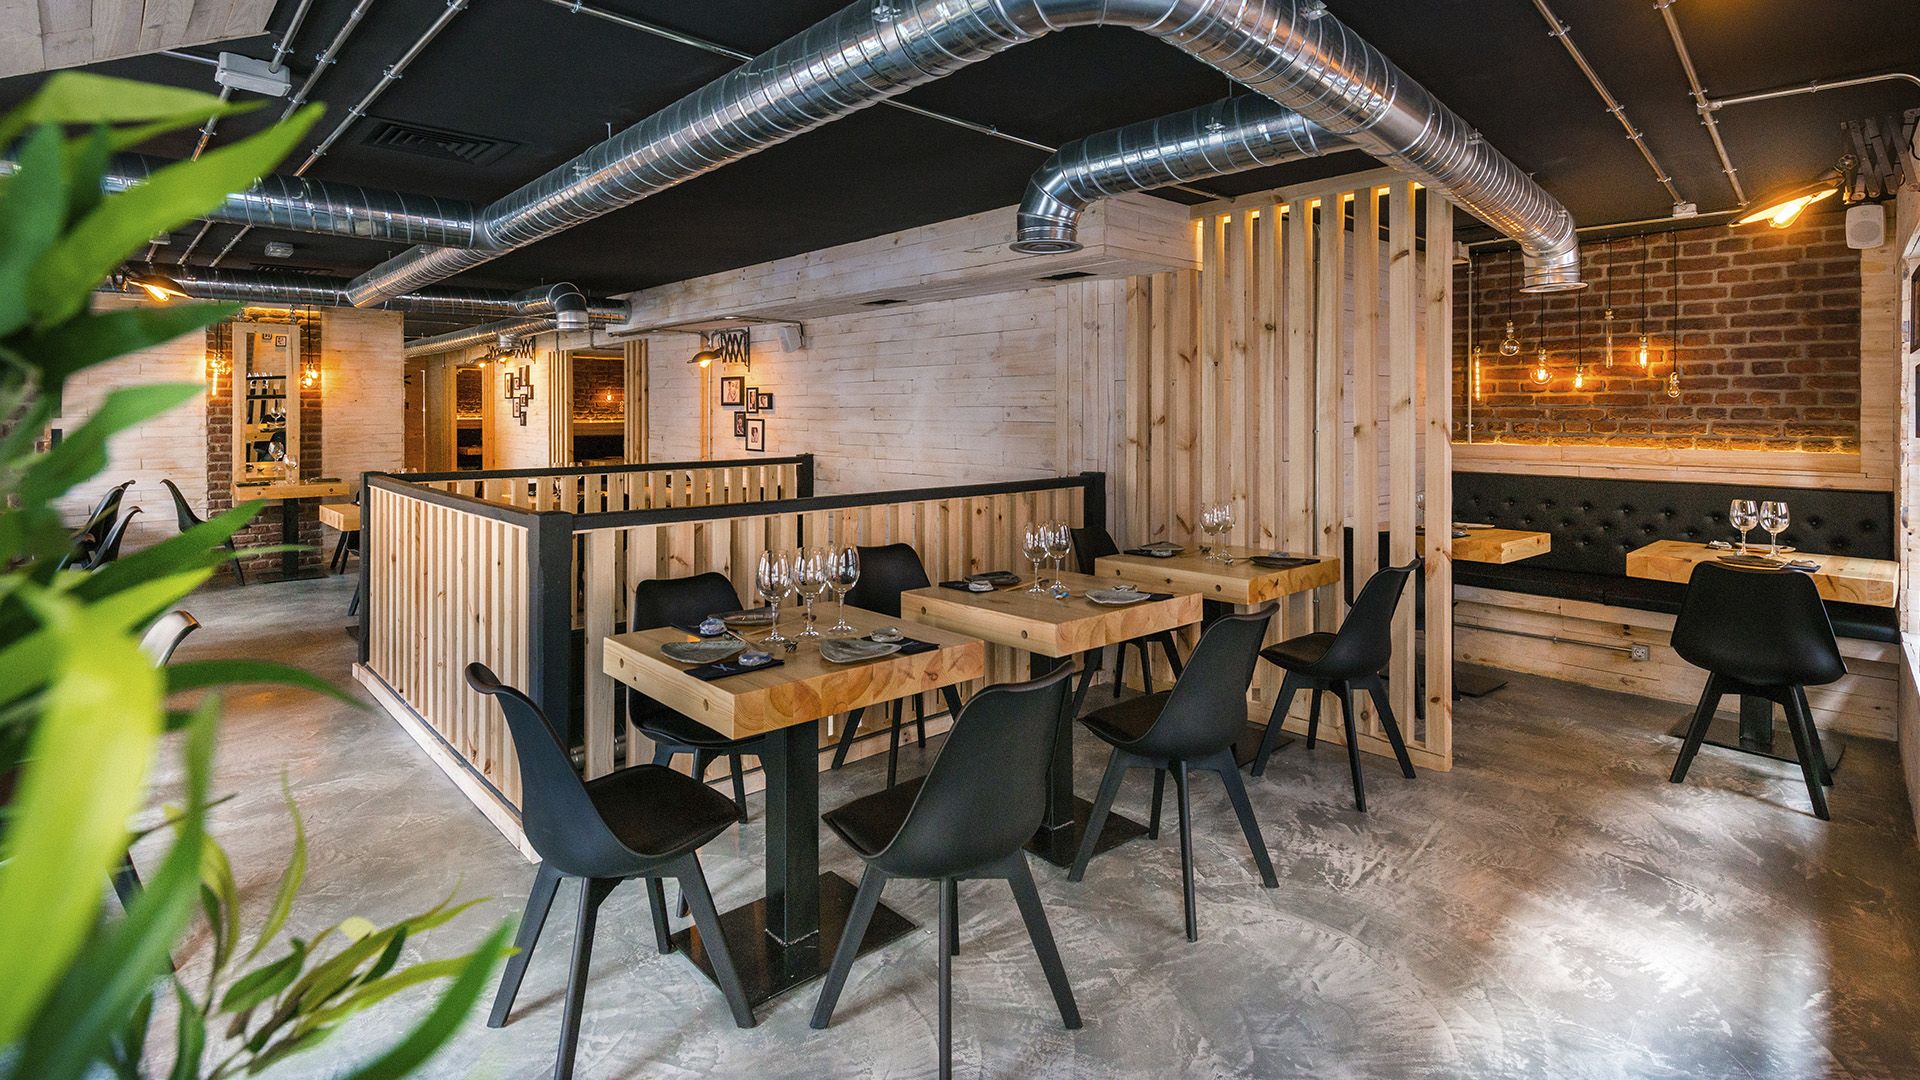 Sibuya Urban Sushi Bar llega a Pamplona